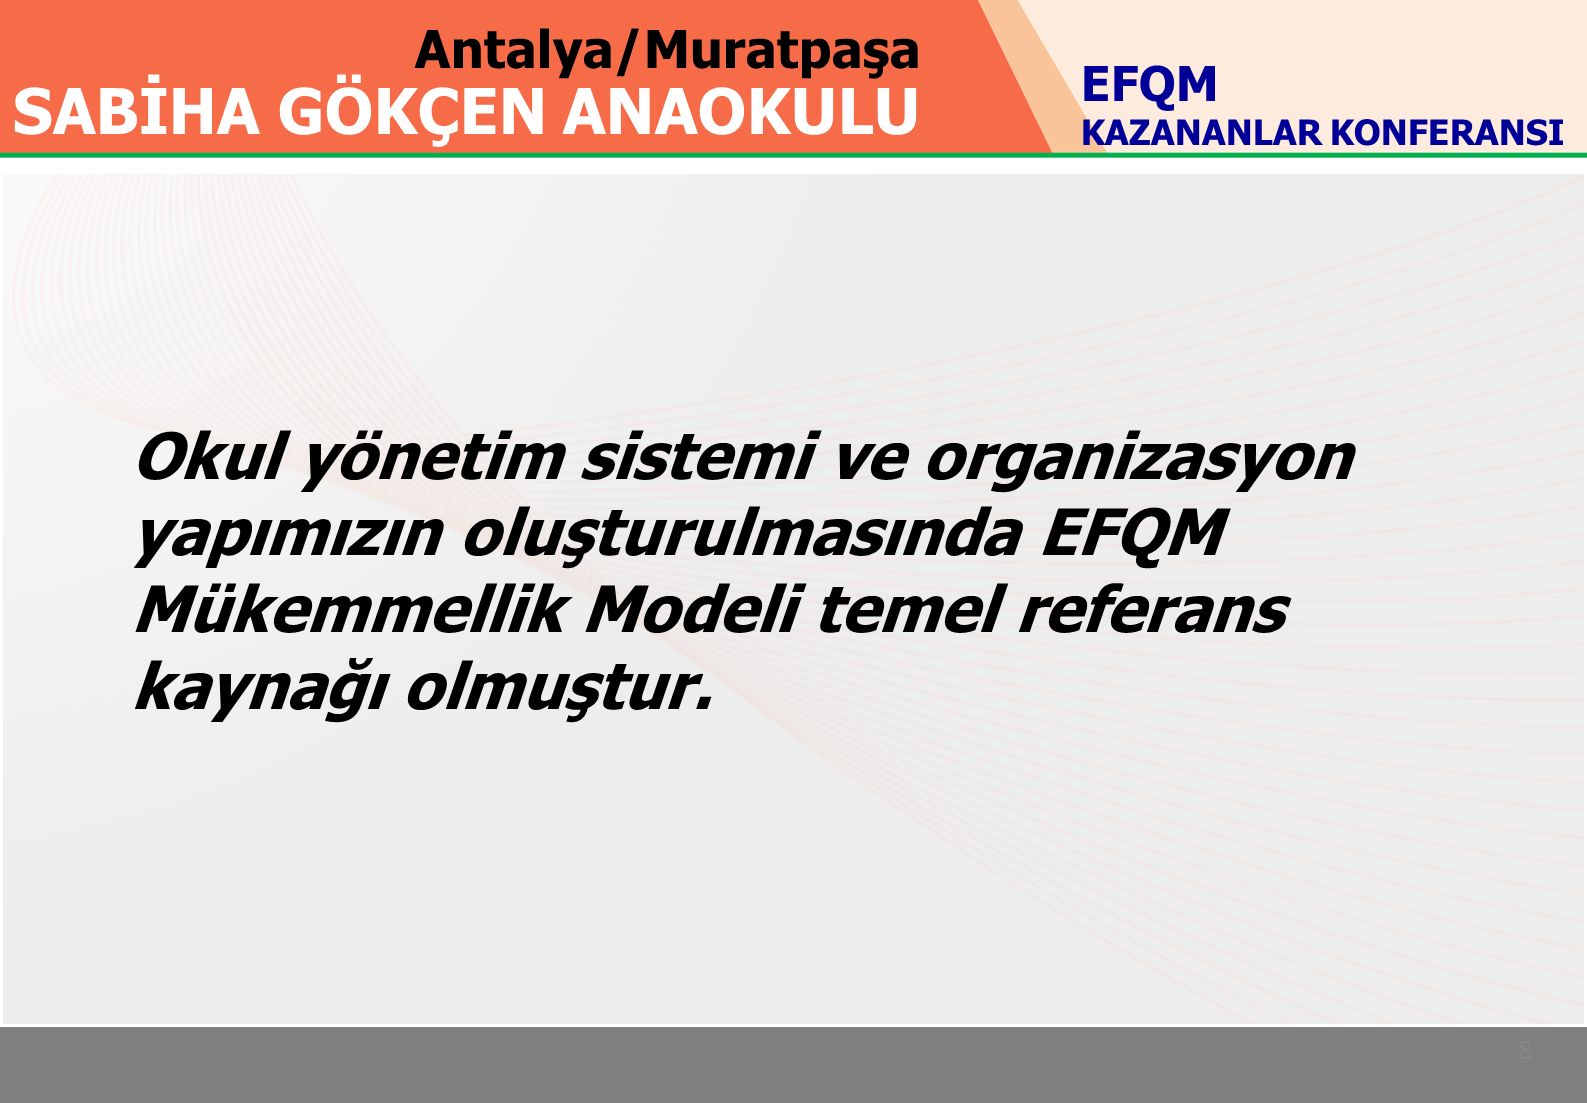 Antalya/Muratpaşa SABİHA GÖKÇEN ANAOKULU 8 EFQM KAZANANLAR KONFERANSI Okul yönetim sistemi ve organizasyon yapımızın oluşturulmasında EFQM Mükemmellik Modeli temel referans kaynağı olmuştur.